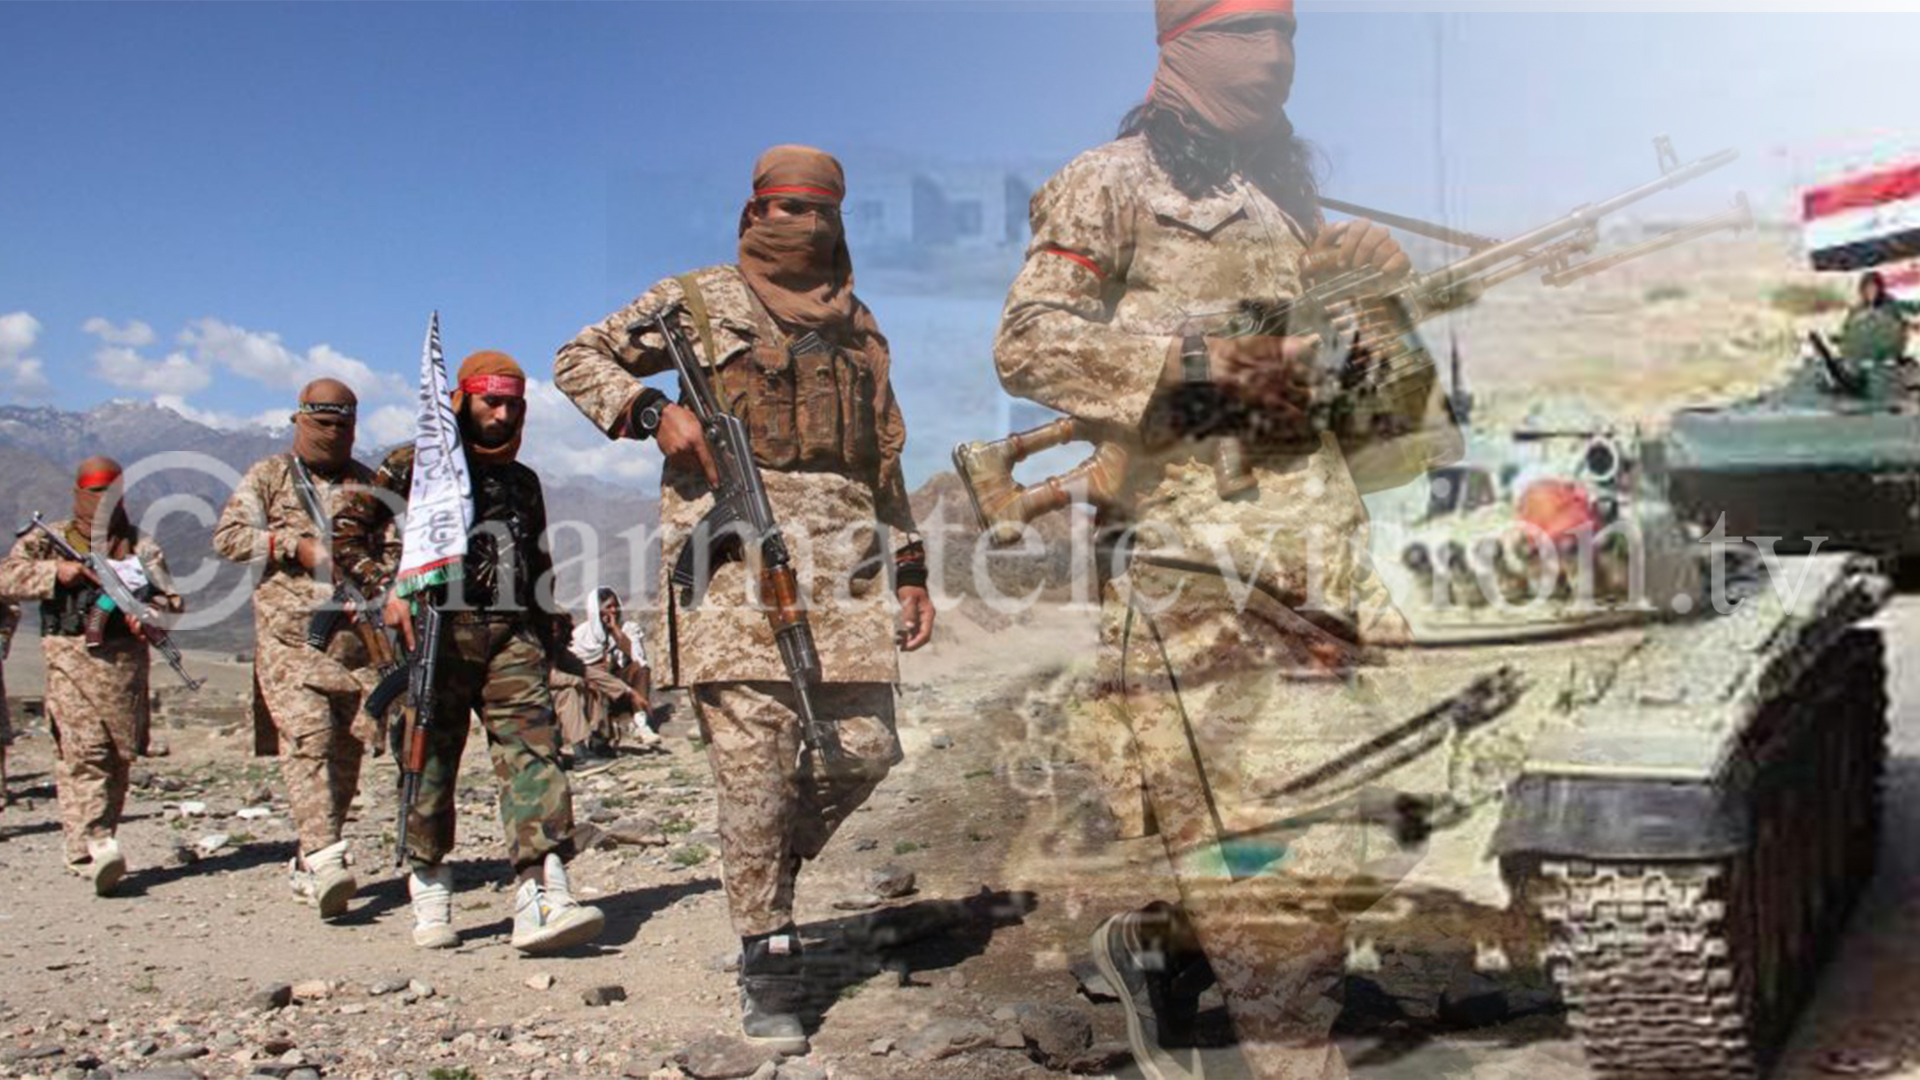 अफगानस्थानमा तालिबानको लडाकुको पल्छिलो आक्रमणमा, १६ सुरक्षाकर्मी मारिए